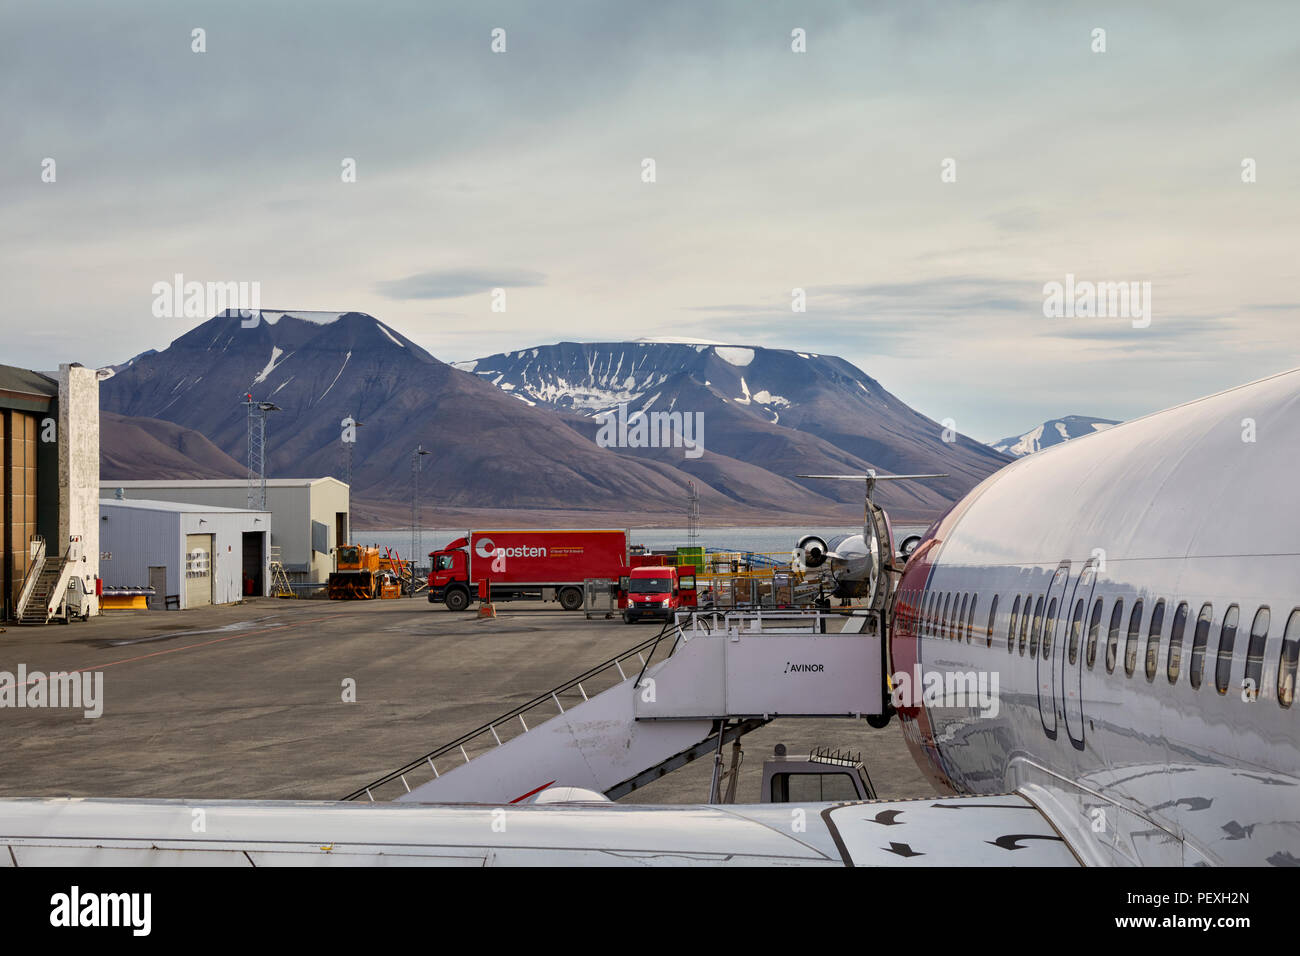 L'aéroport de Longyearbyen Longyearbyen Svalbard Lufthavn comme vu à partir d'un avion Banque D'Images